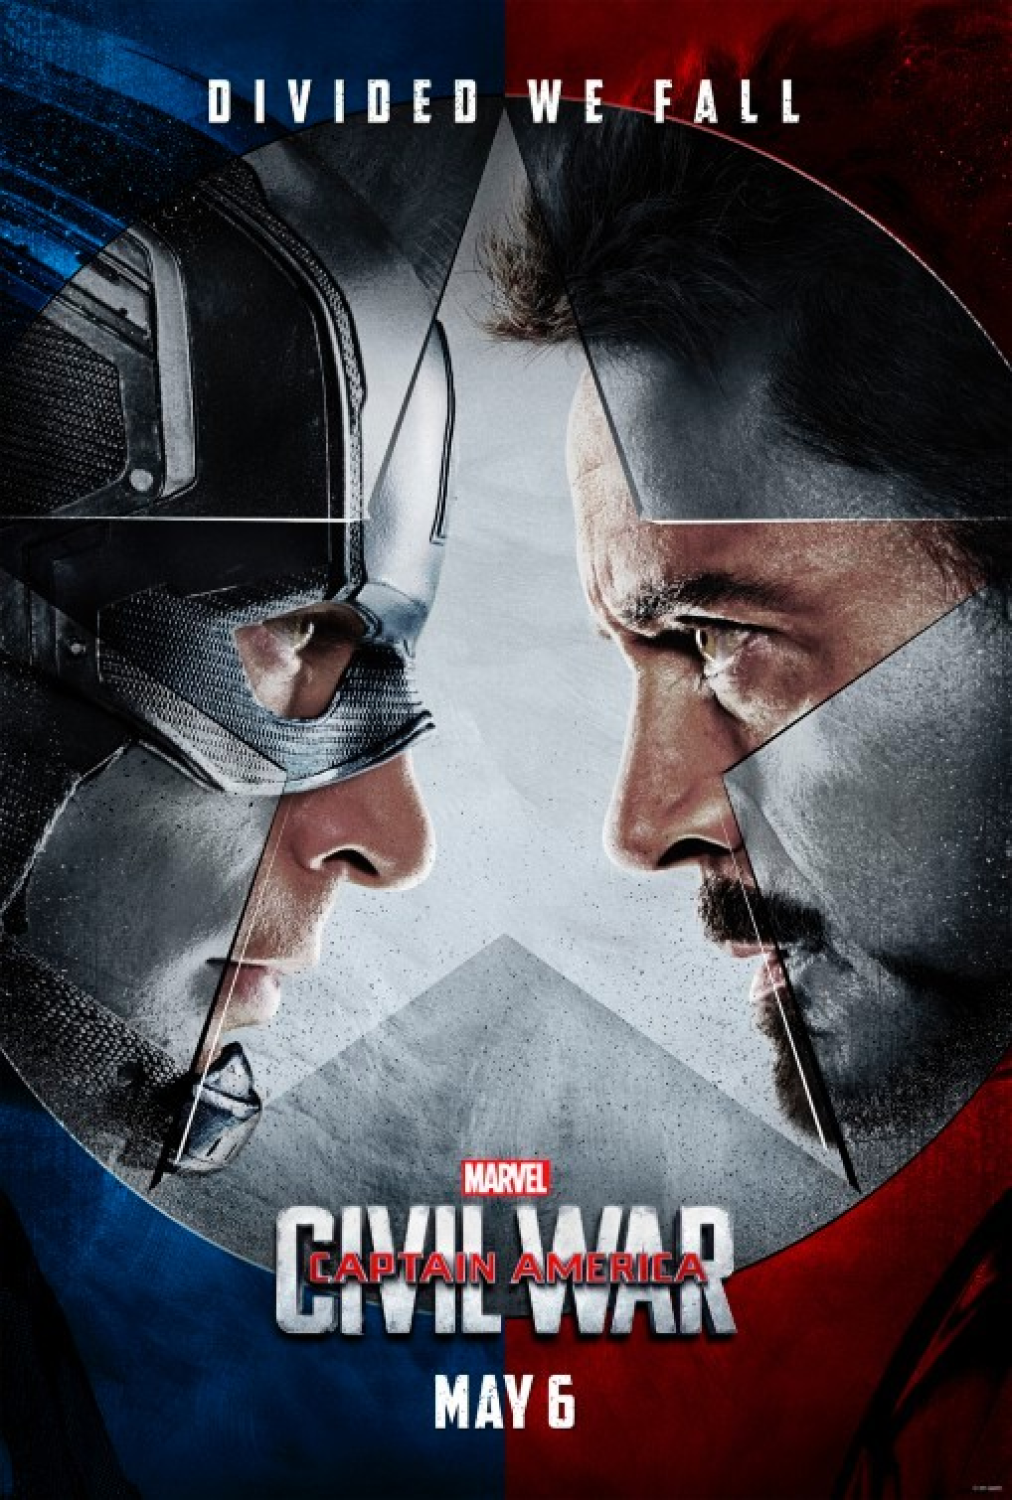 ดูหนัง Captain America 3 Civil War (2016) กัปตัน อเมริกา ศึกฮีโร่ระห่ำโลก ศึกระหว่างหัวหน้าทีมอย่างไอรอนแมน และ กัปตันอเมริกา งานนี้แผ่นดินต้องลุกเป็นไฟ เต็มเรื่อง หนังHD พากย์ไทยและซาวด์แทรค